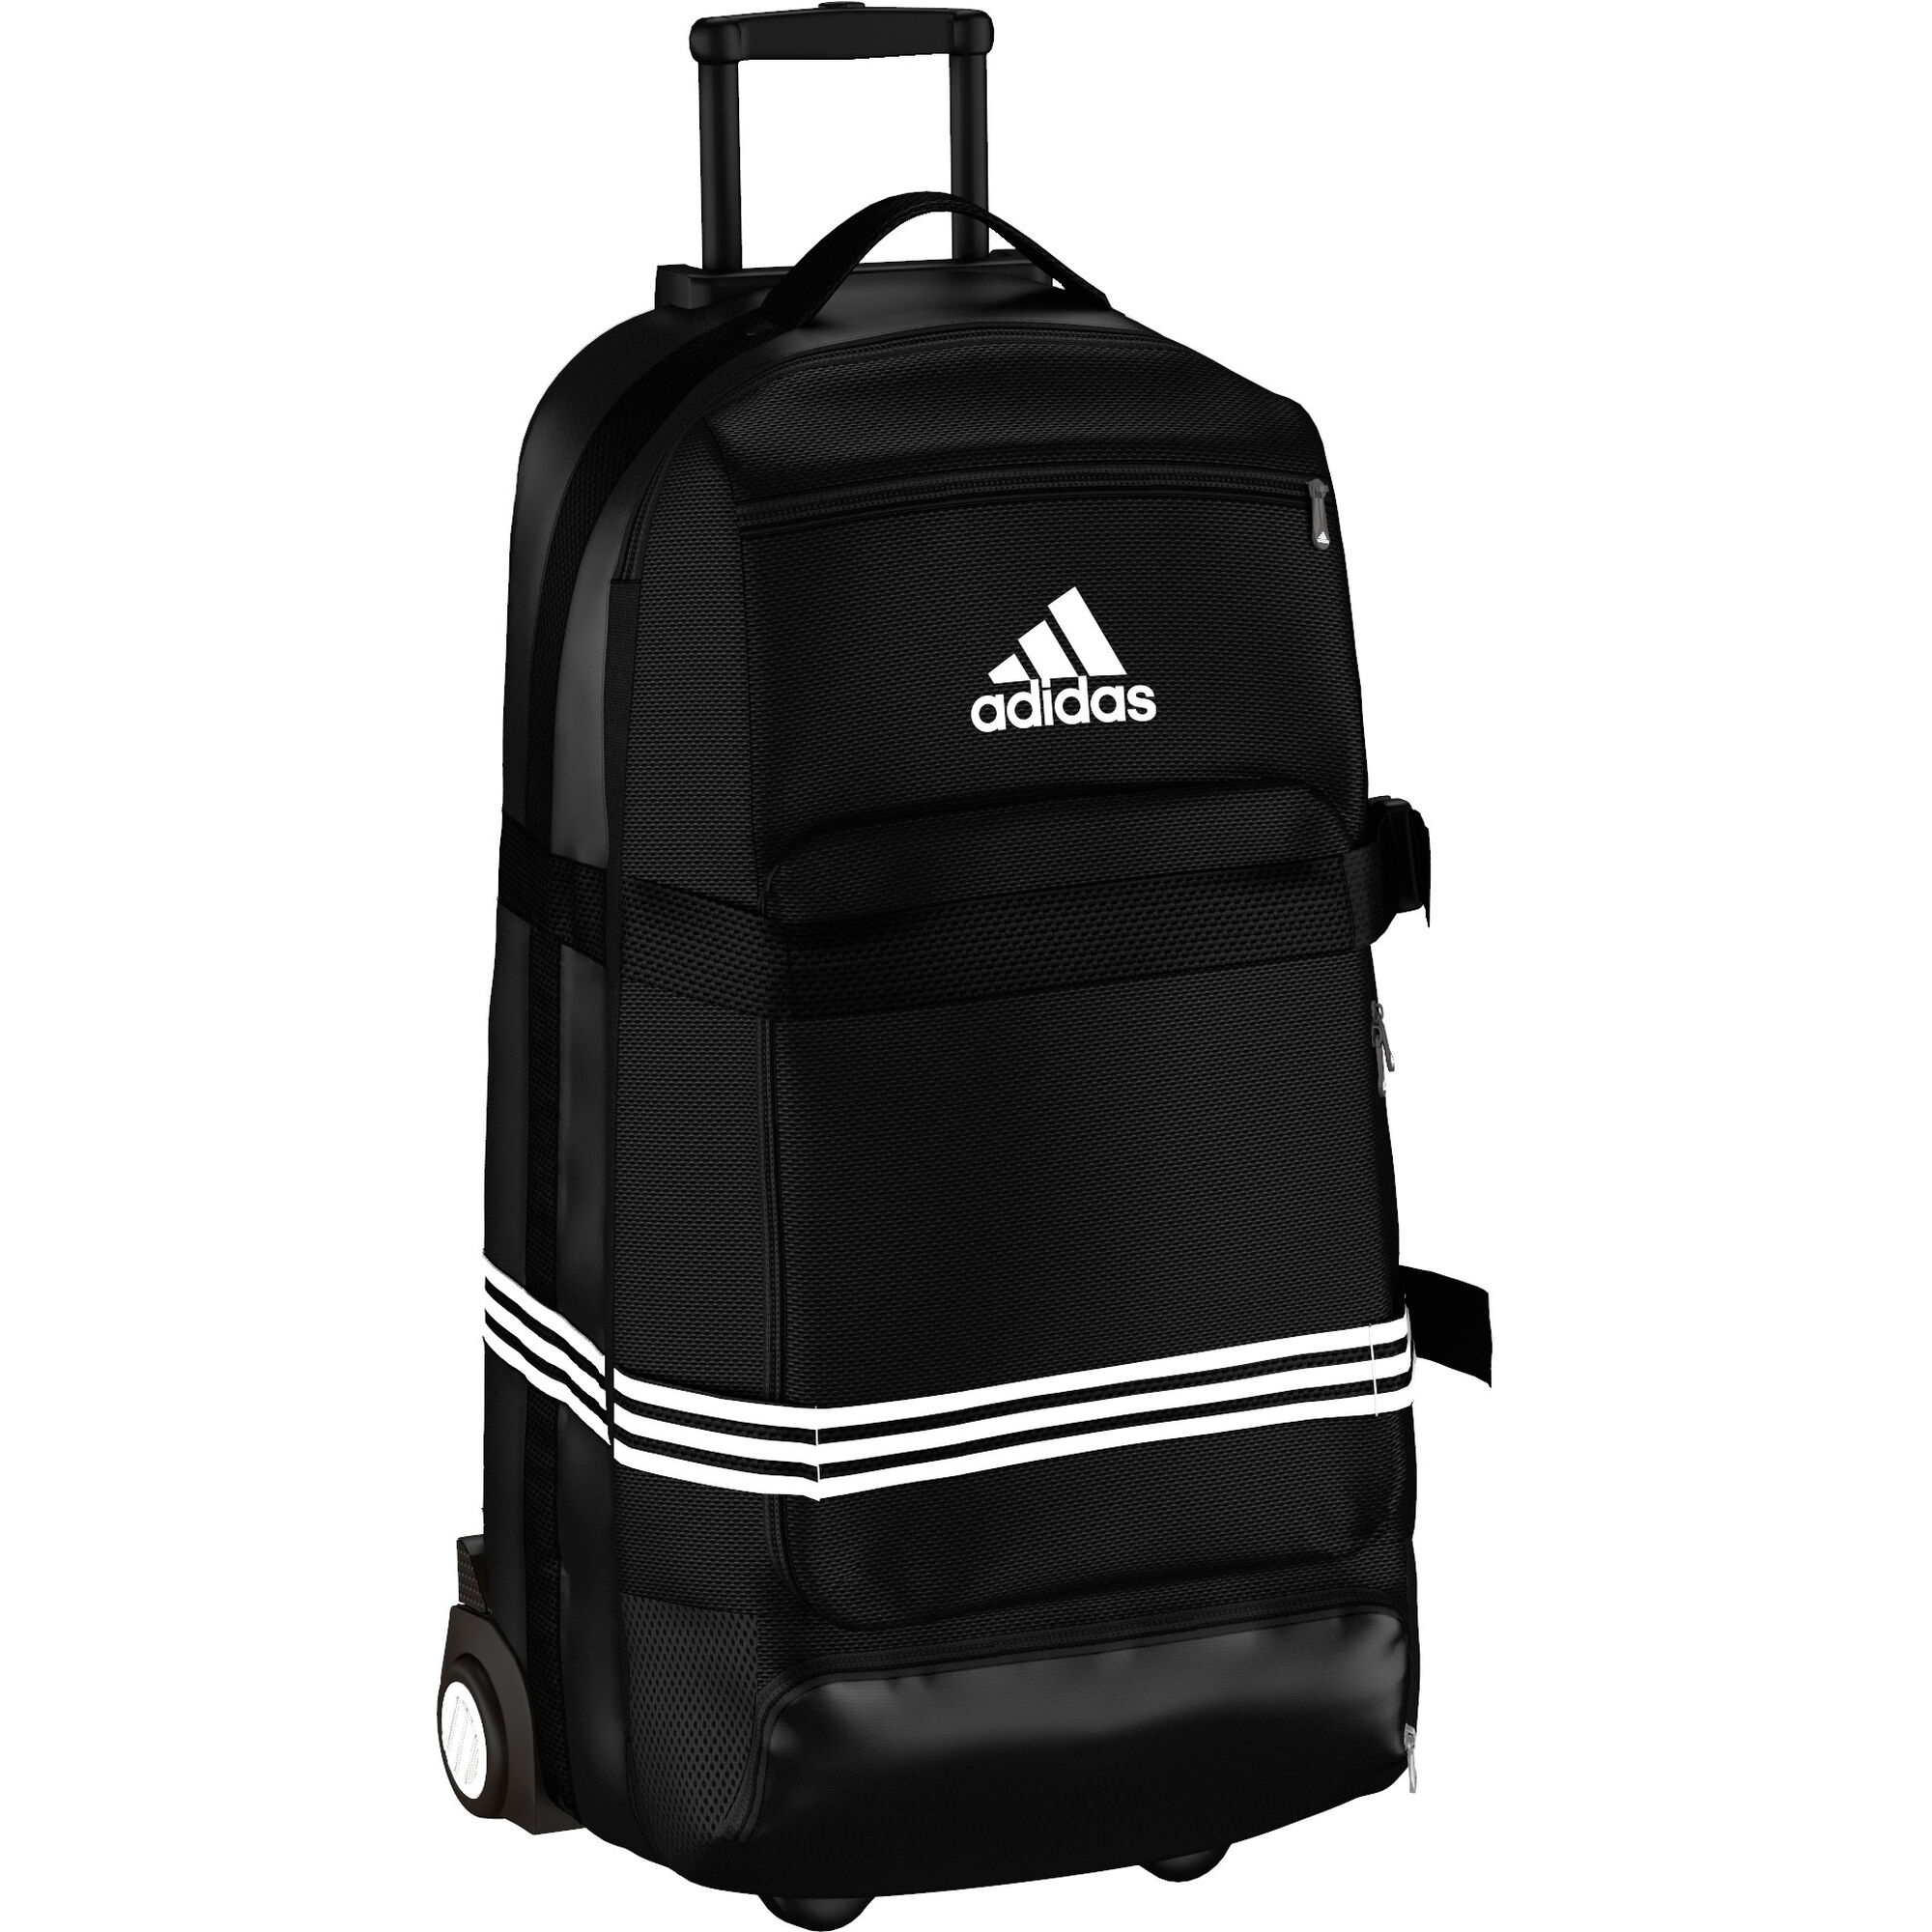 adidas travel luggage